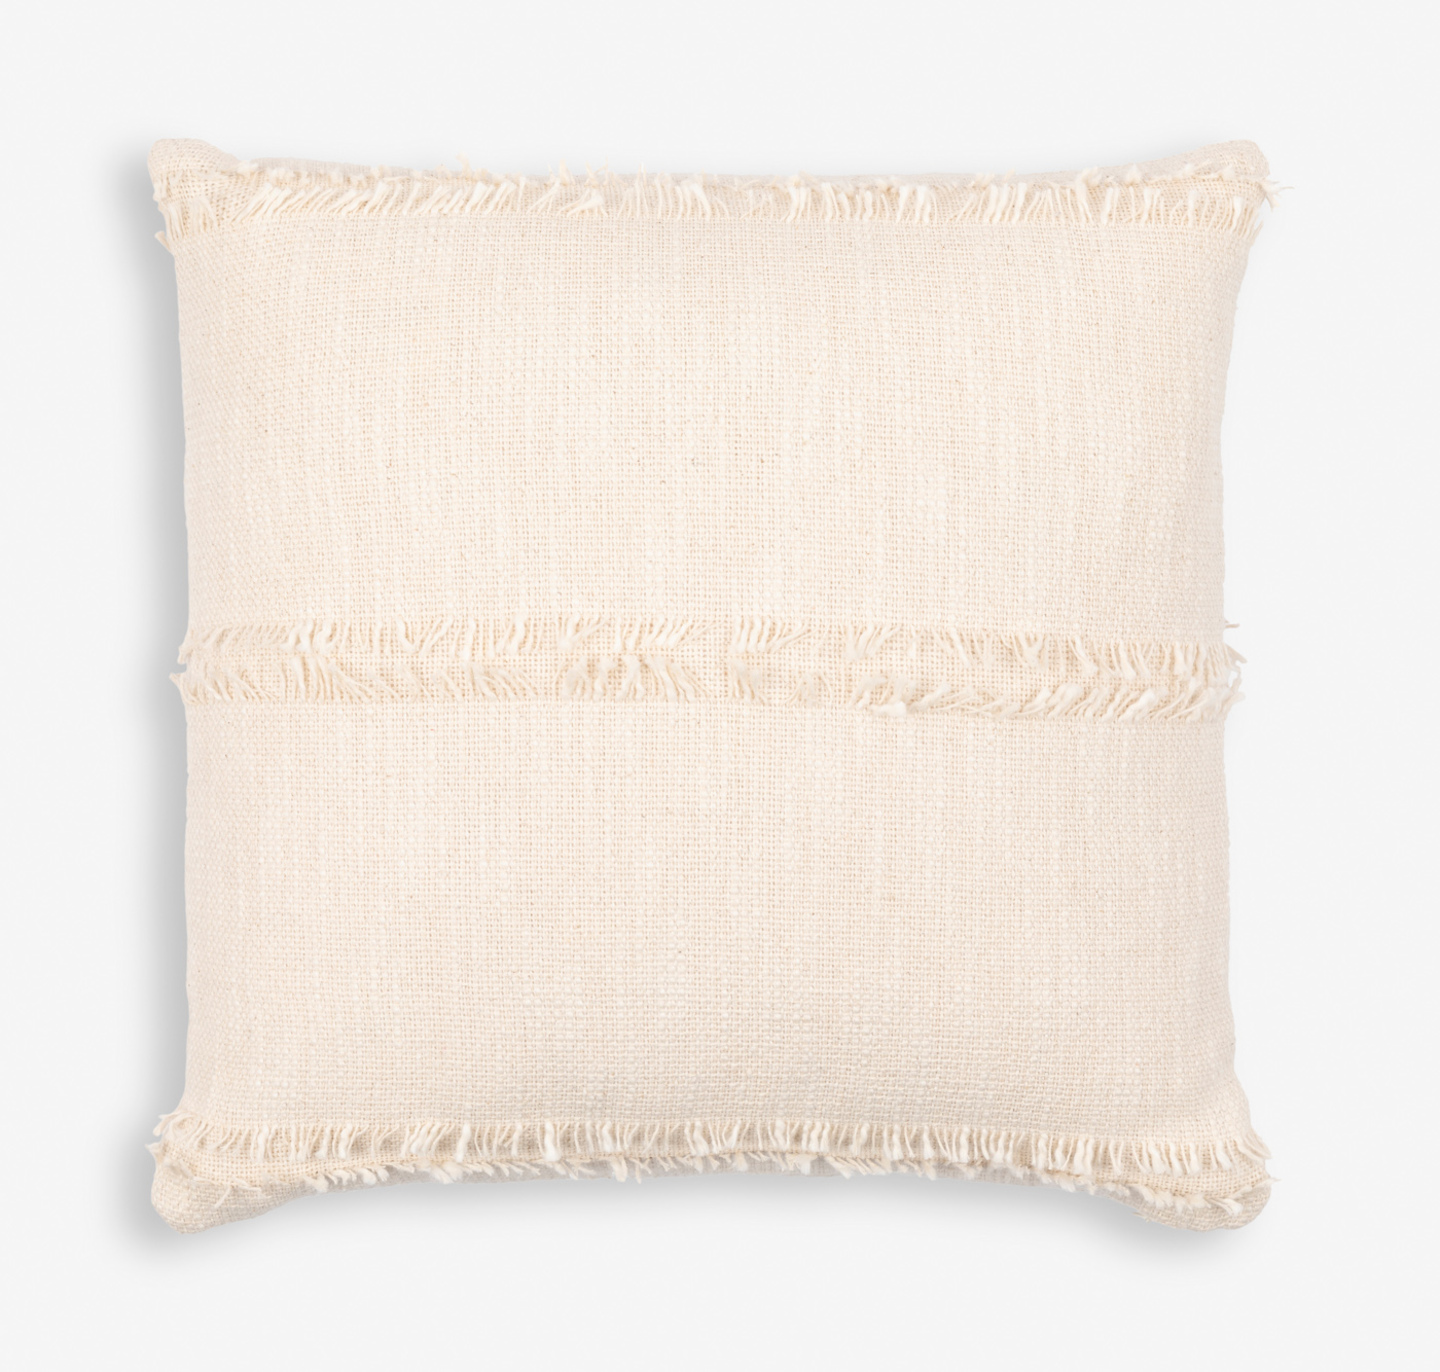 Lyra Throw Pillow (20"x20")